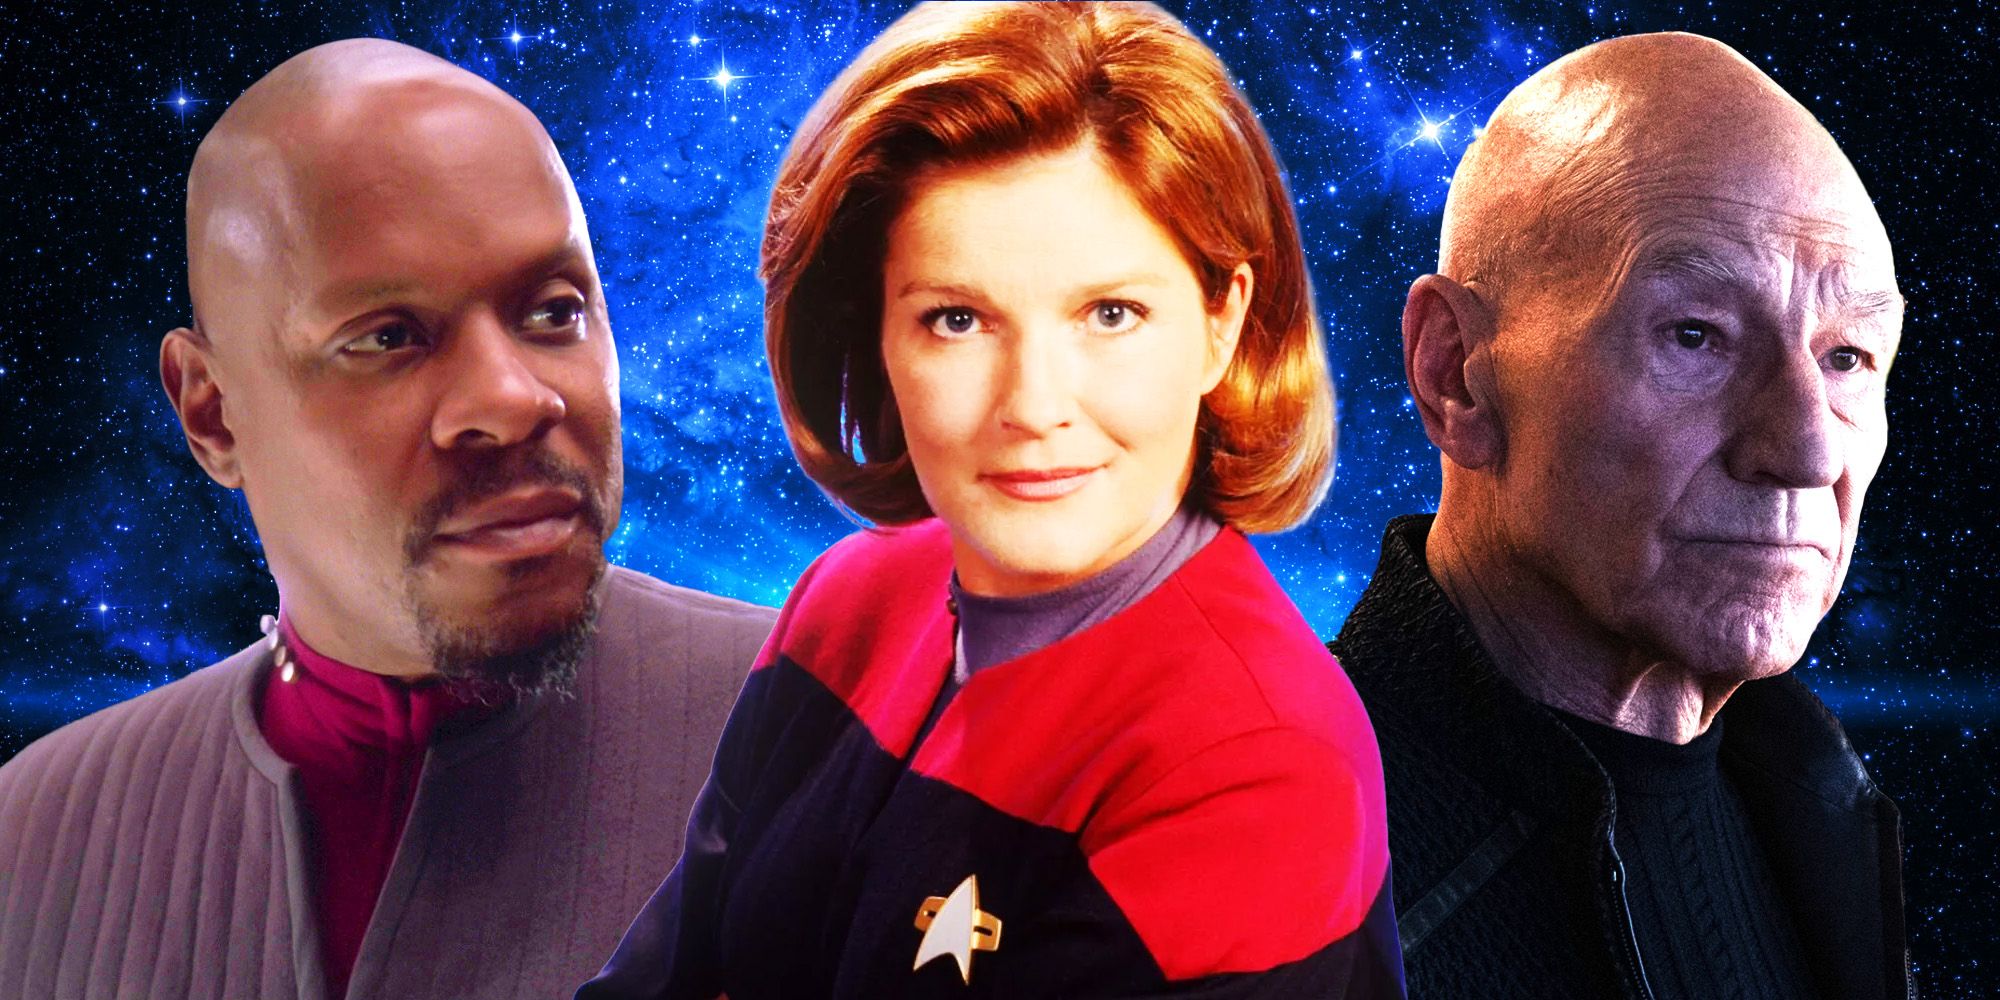 Star Trek: Voyager presagiaba en secreto el enorme giro de DS9 y Picard